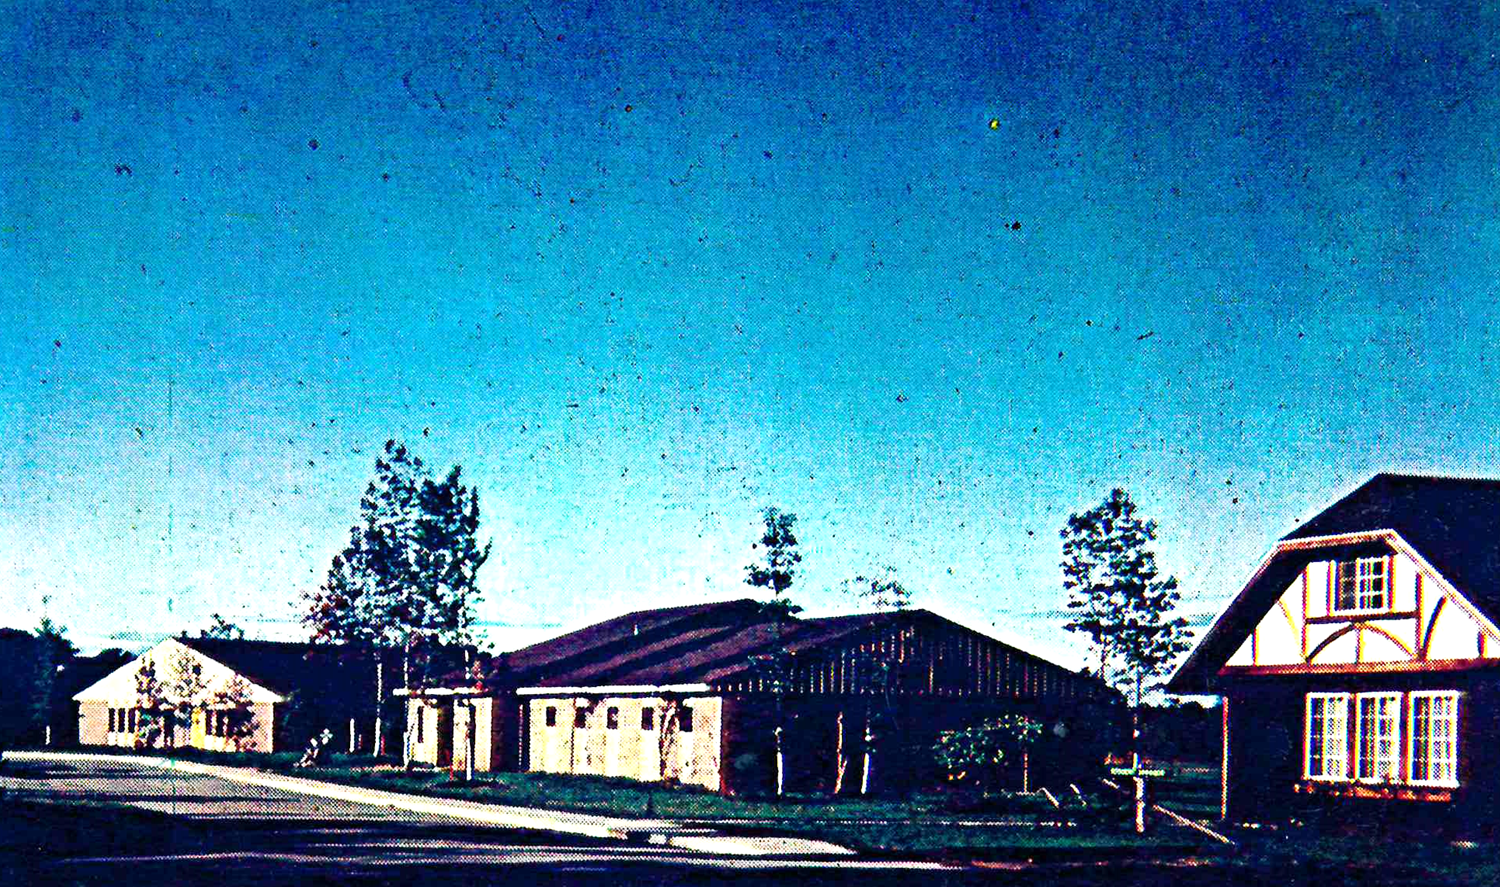 Historic Ebersole Campus